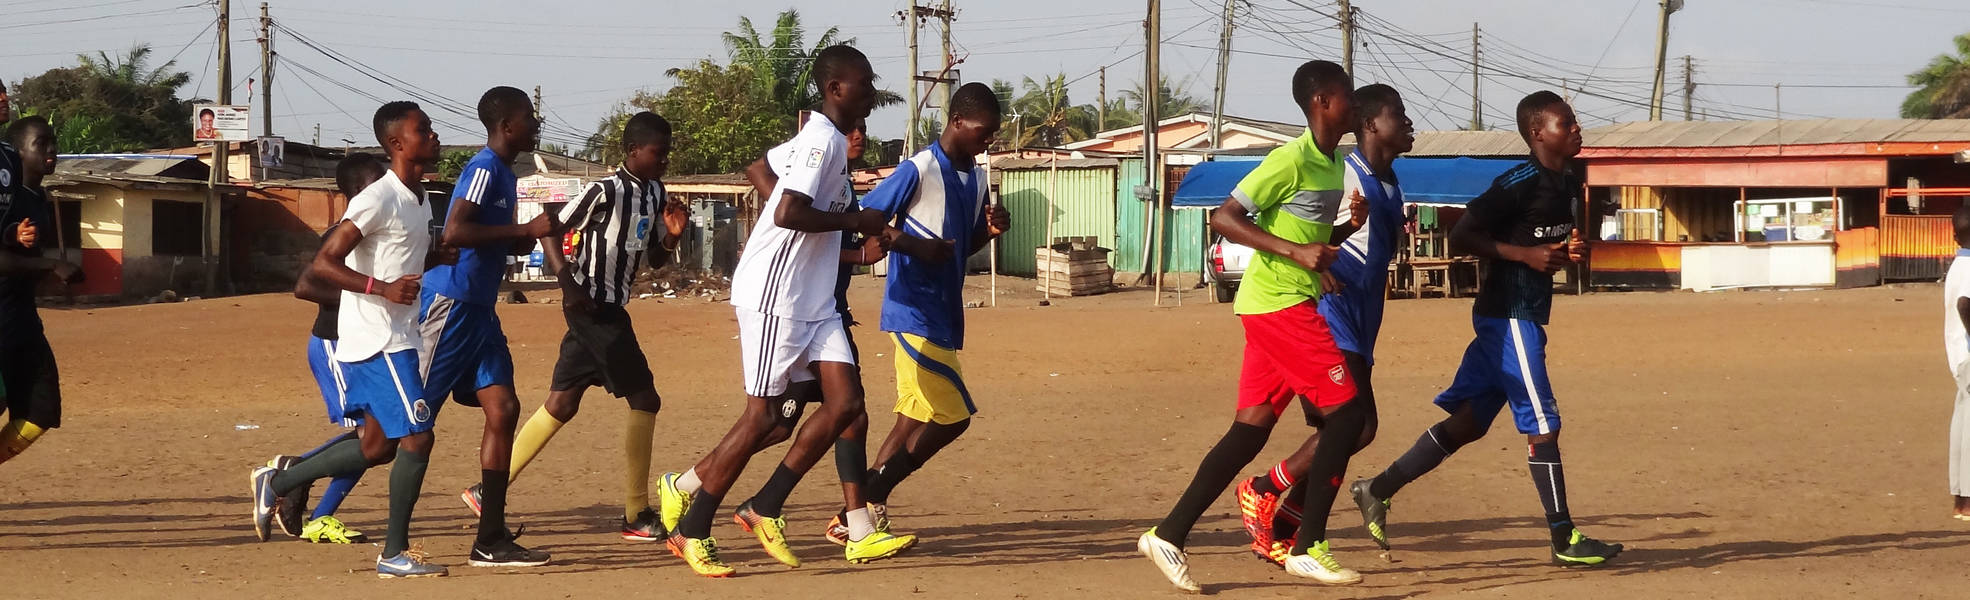 Volunteering as a football coach in Ghana